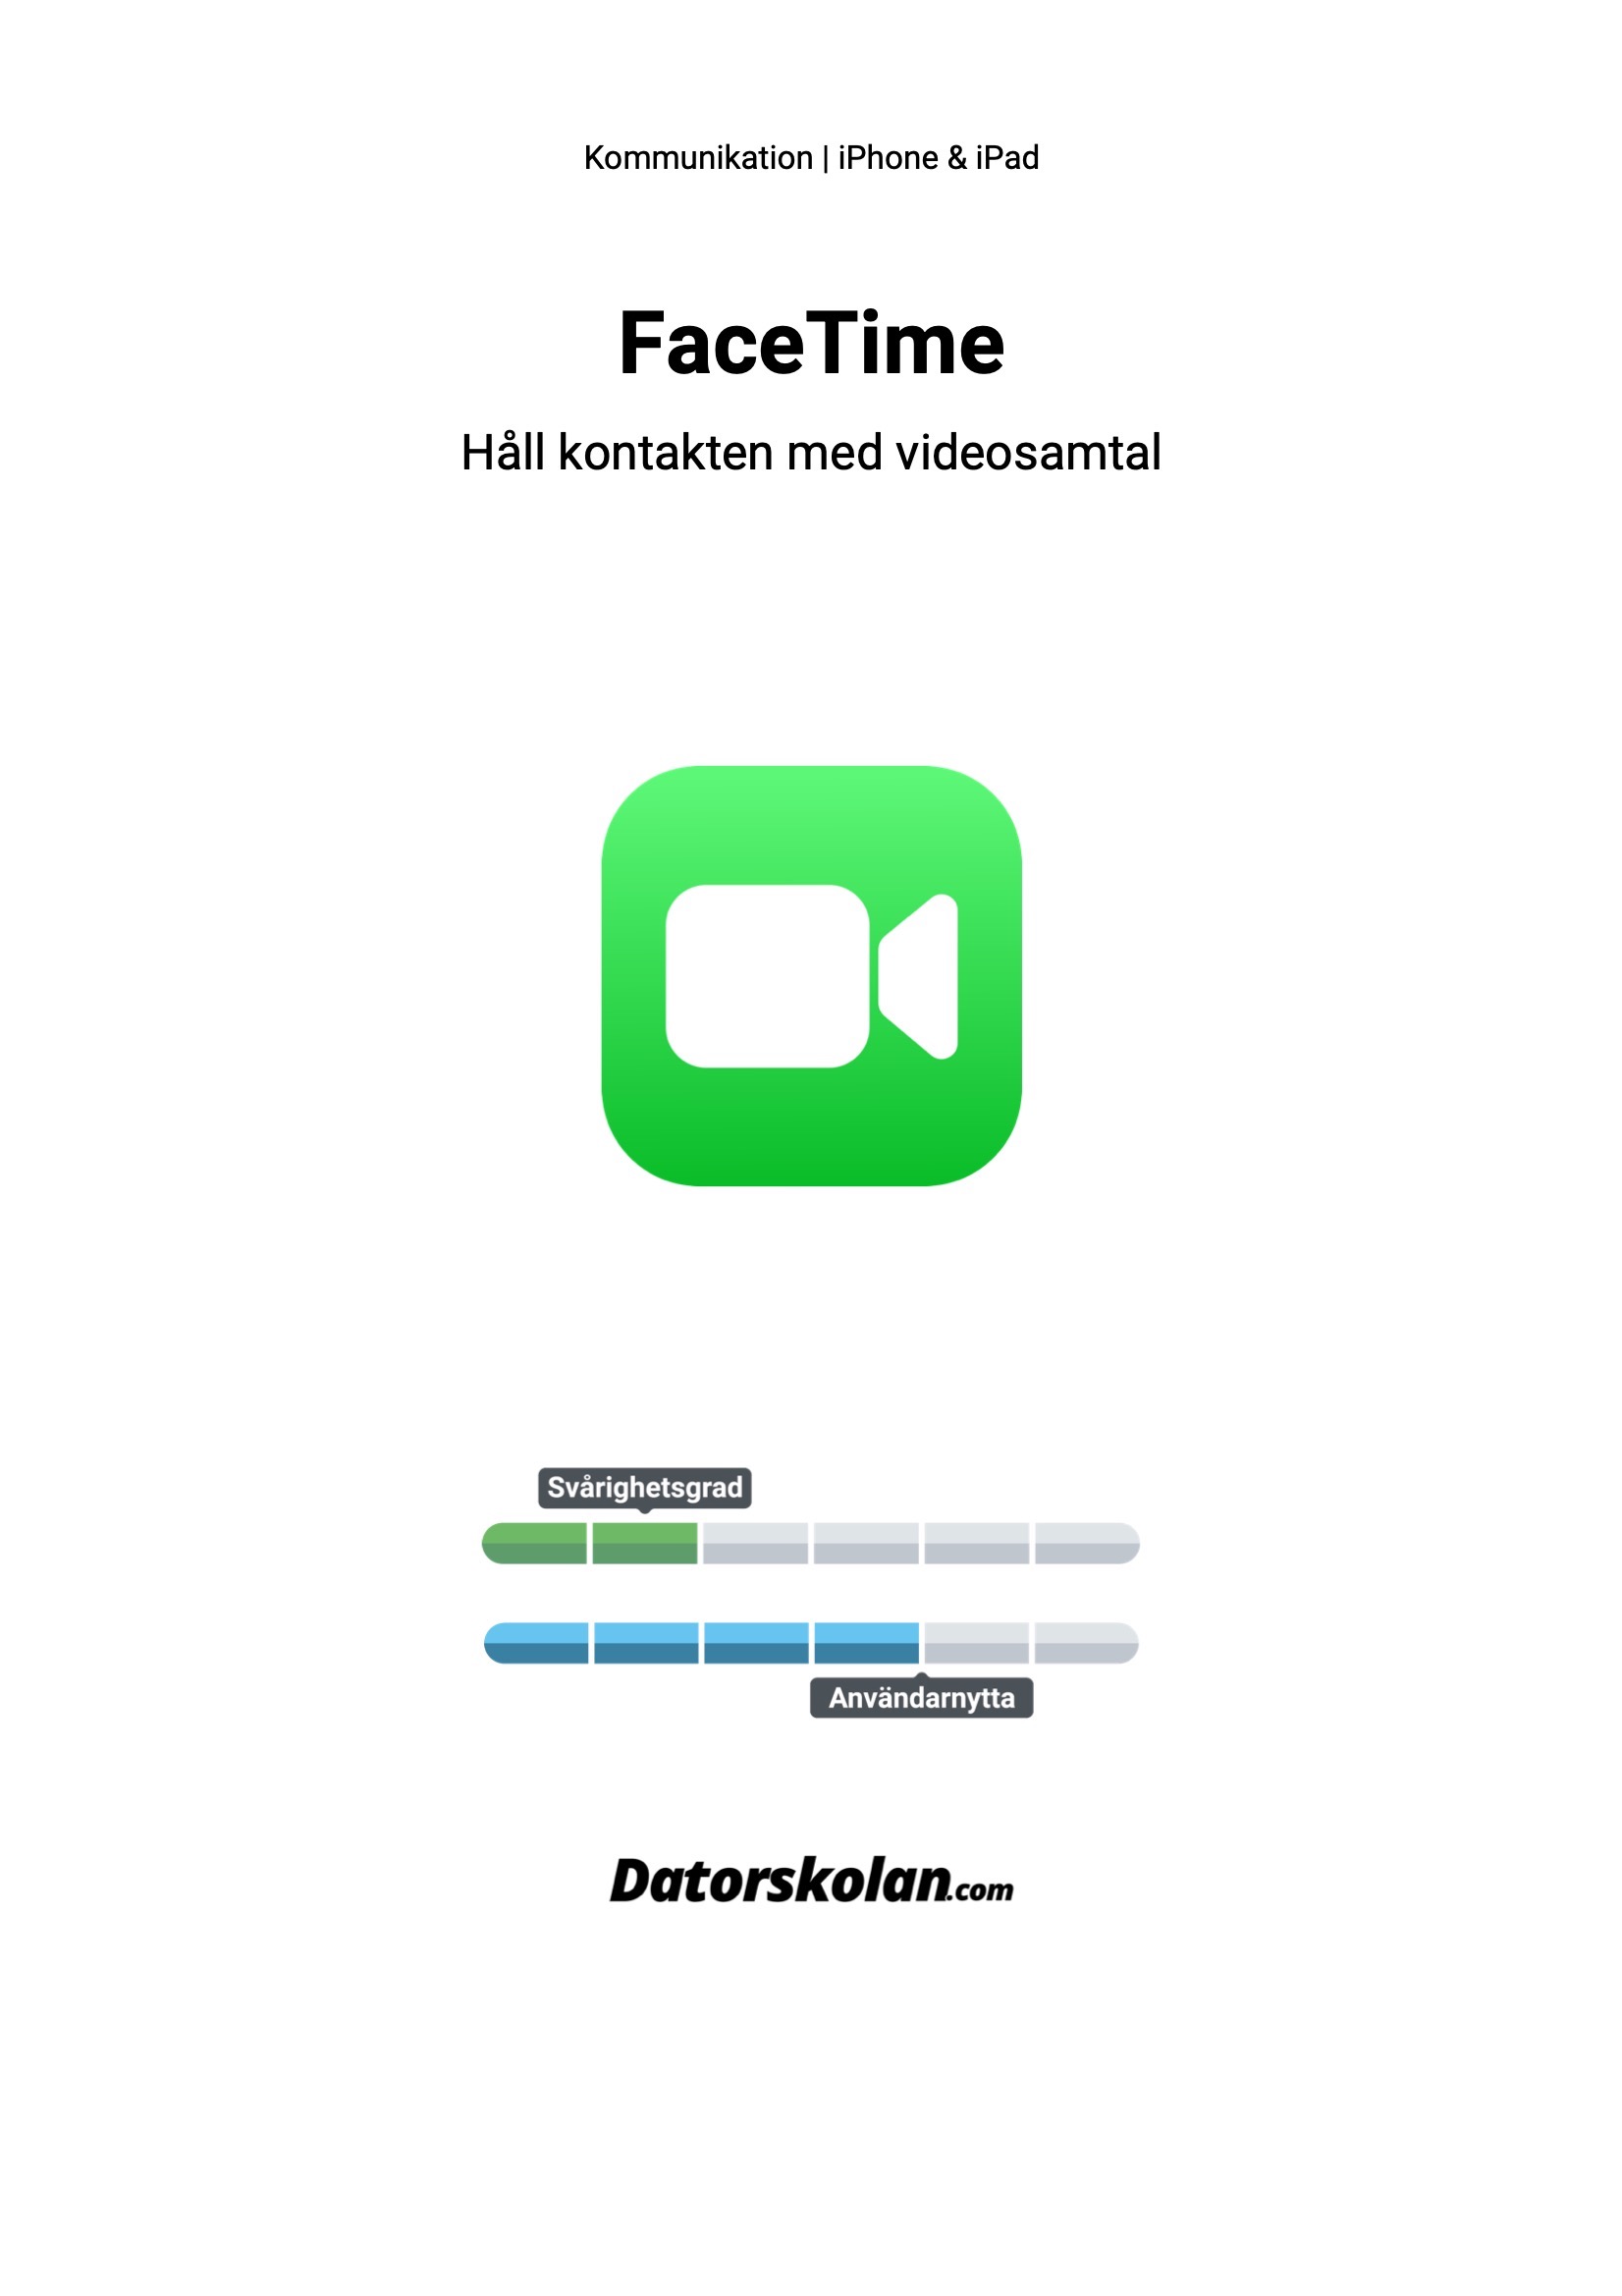 Framsidan av DigiGuiden som handlar om Facetime